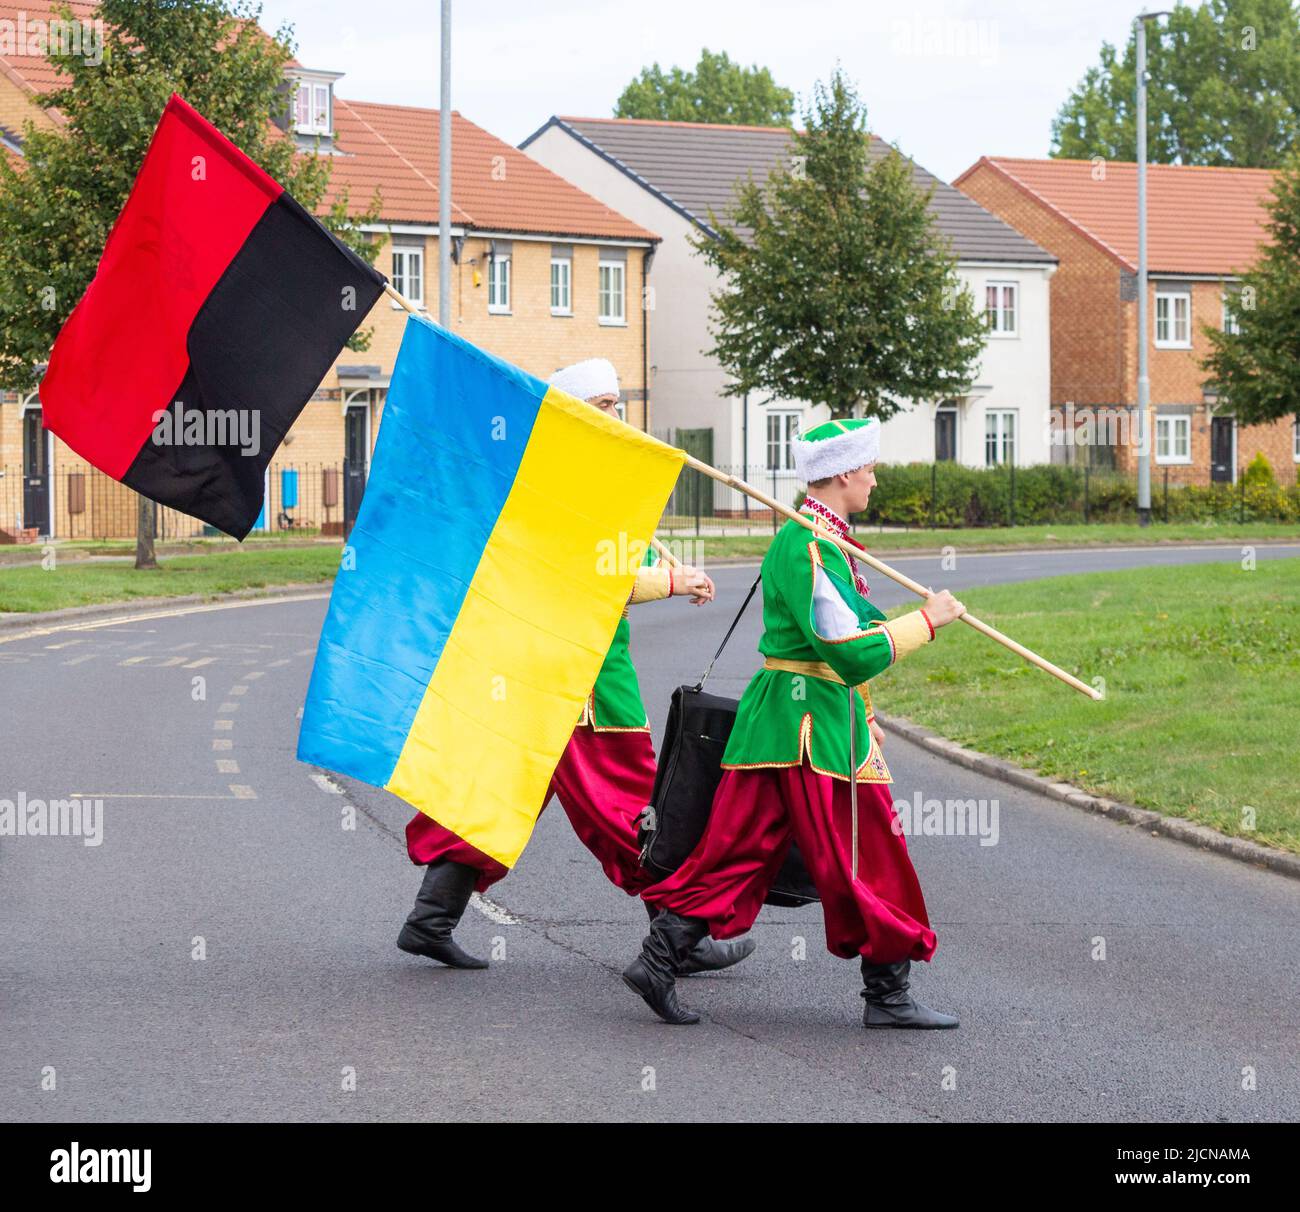 Männer aus der ukrainischen Tanzgruppe in traditioneller Kleidung. Eine Flagge der Ukraine und eine Flagge der ukrainischen Aufständischen Armee (schwarz und rot). Stockfoto